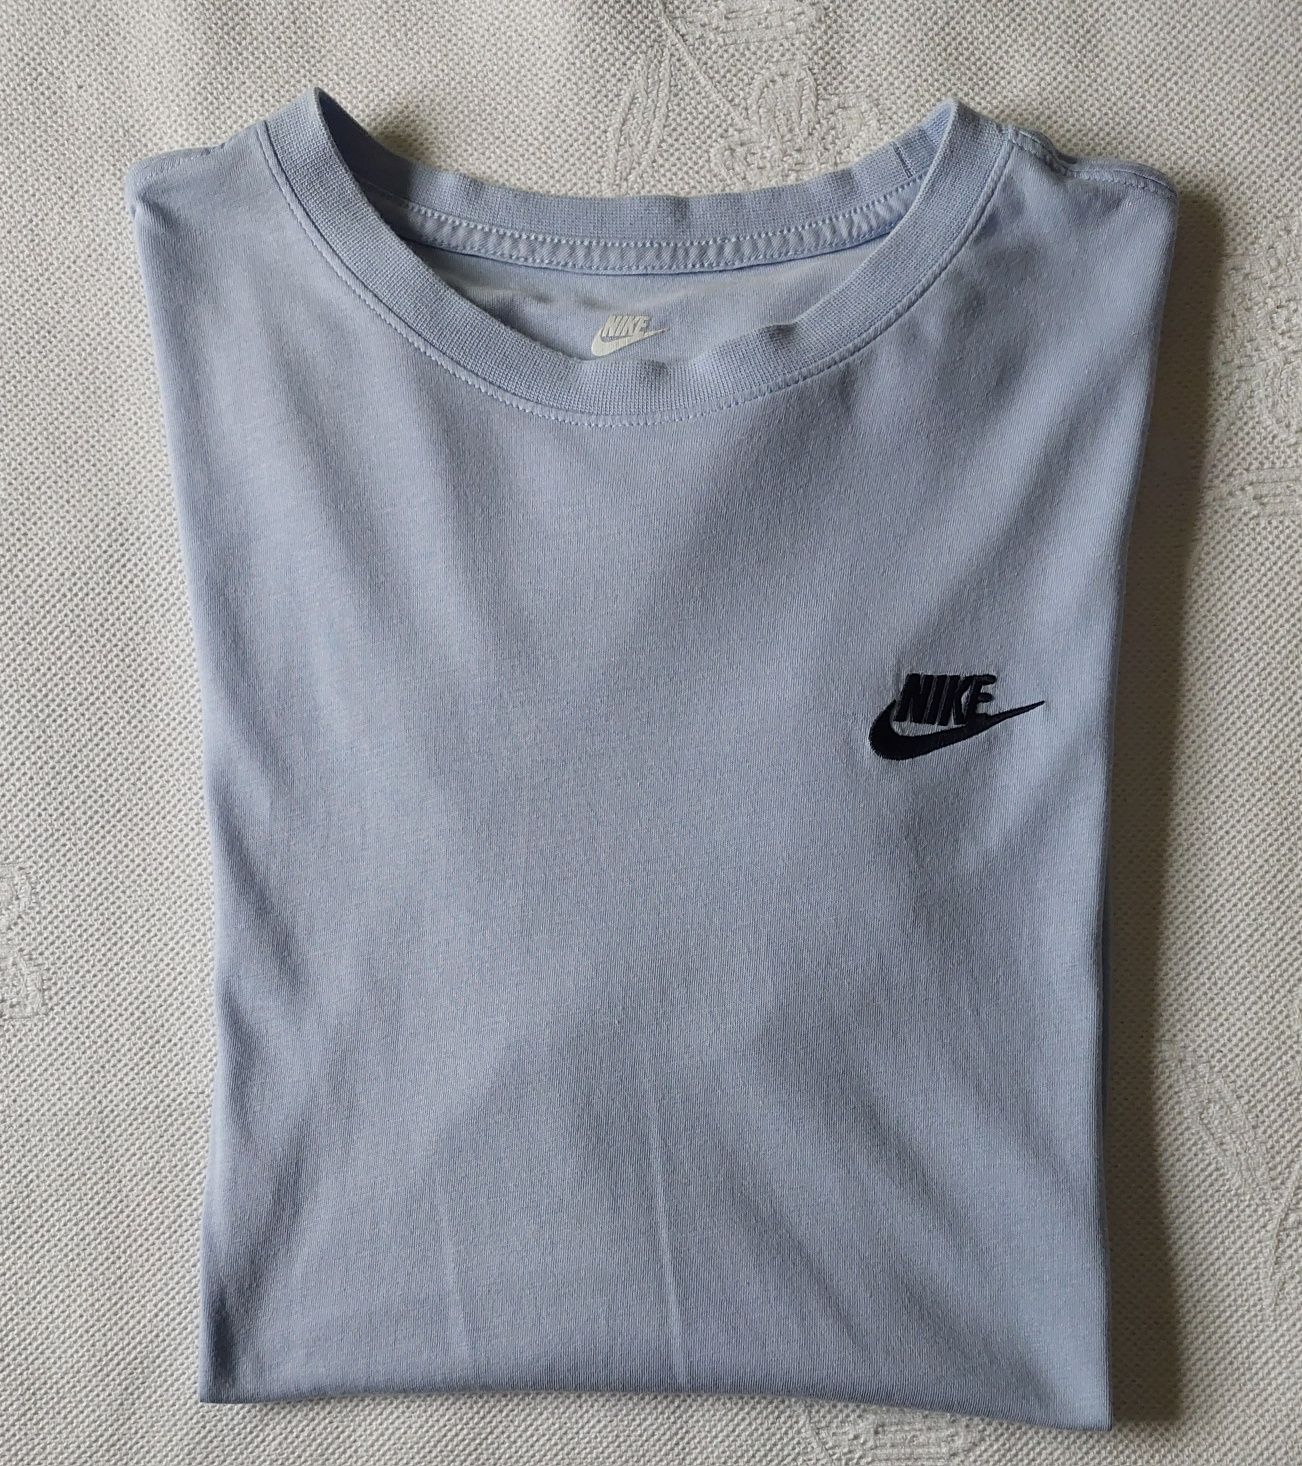 Tshirt Nike Azul clara